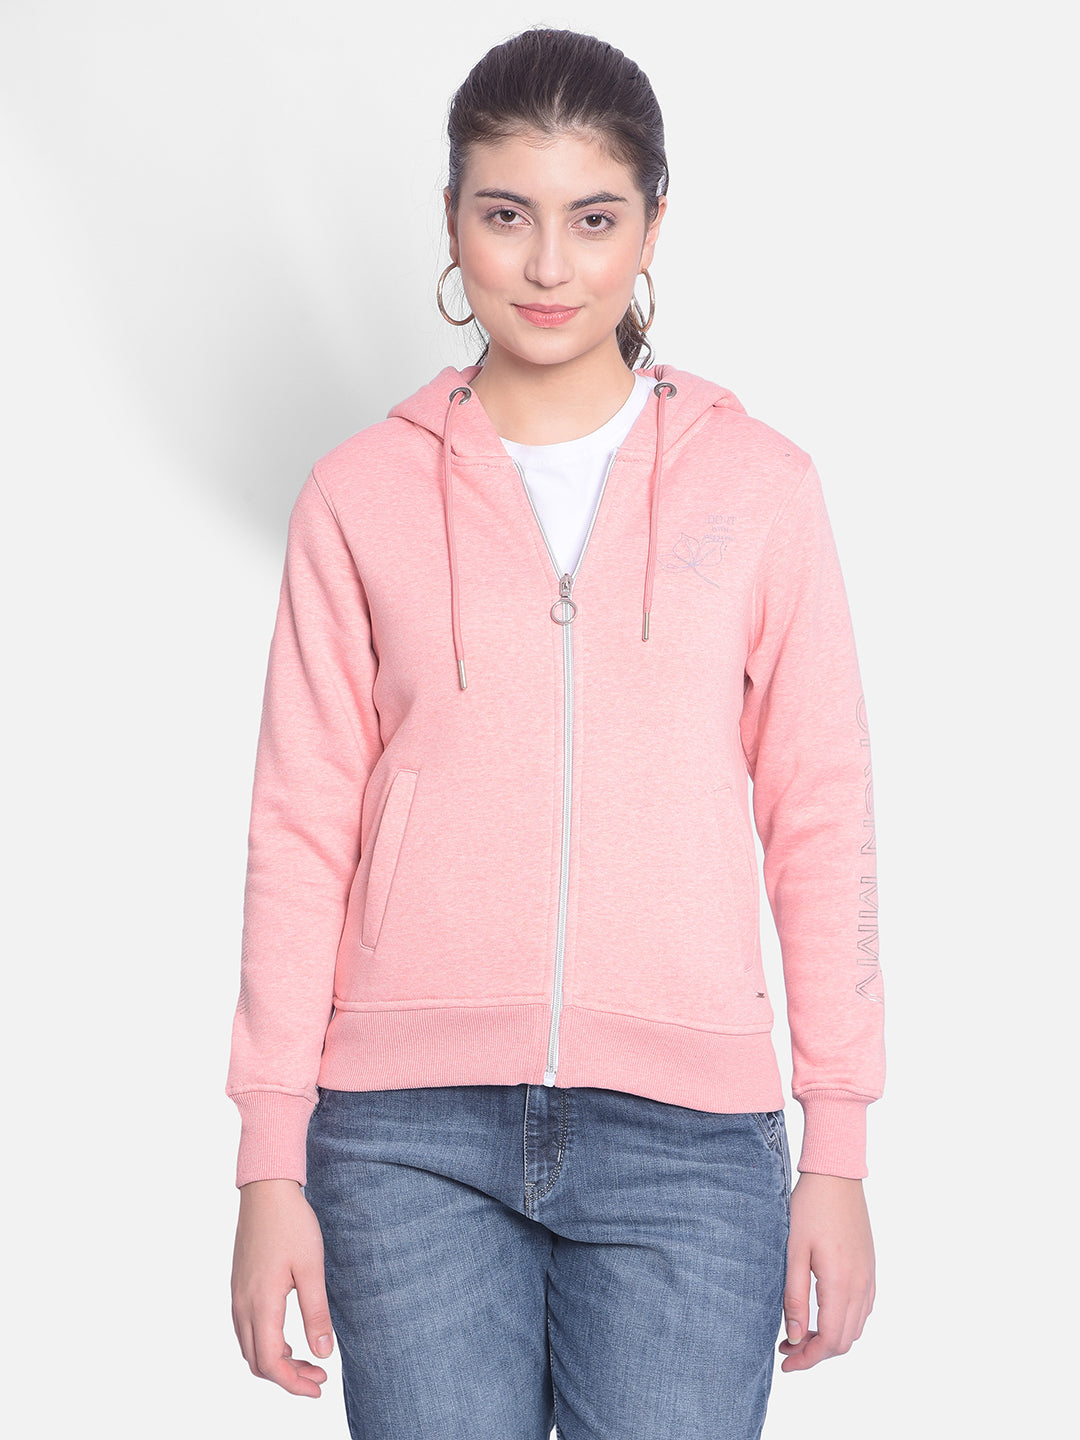 Pink Hooded Sweatshirt-Women Sweatshirts-Crimsoune Club